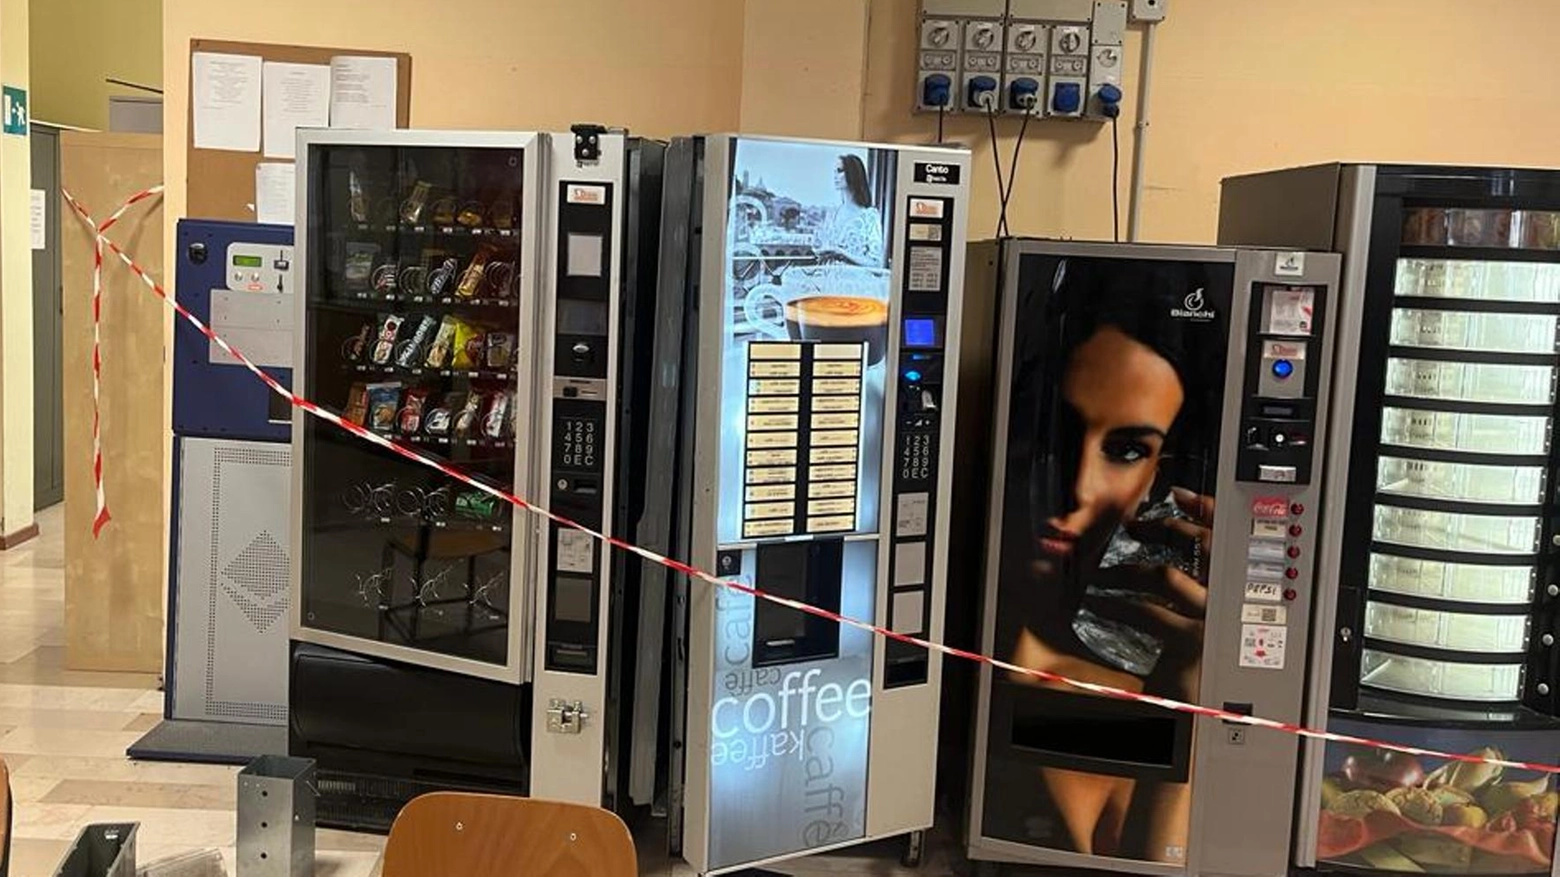 I ladri colpiscono e forzano i distributori automatici (foto d'archivio)